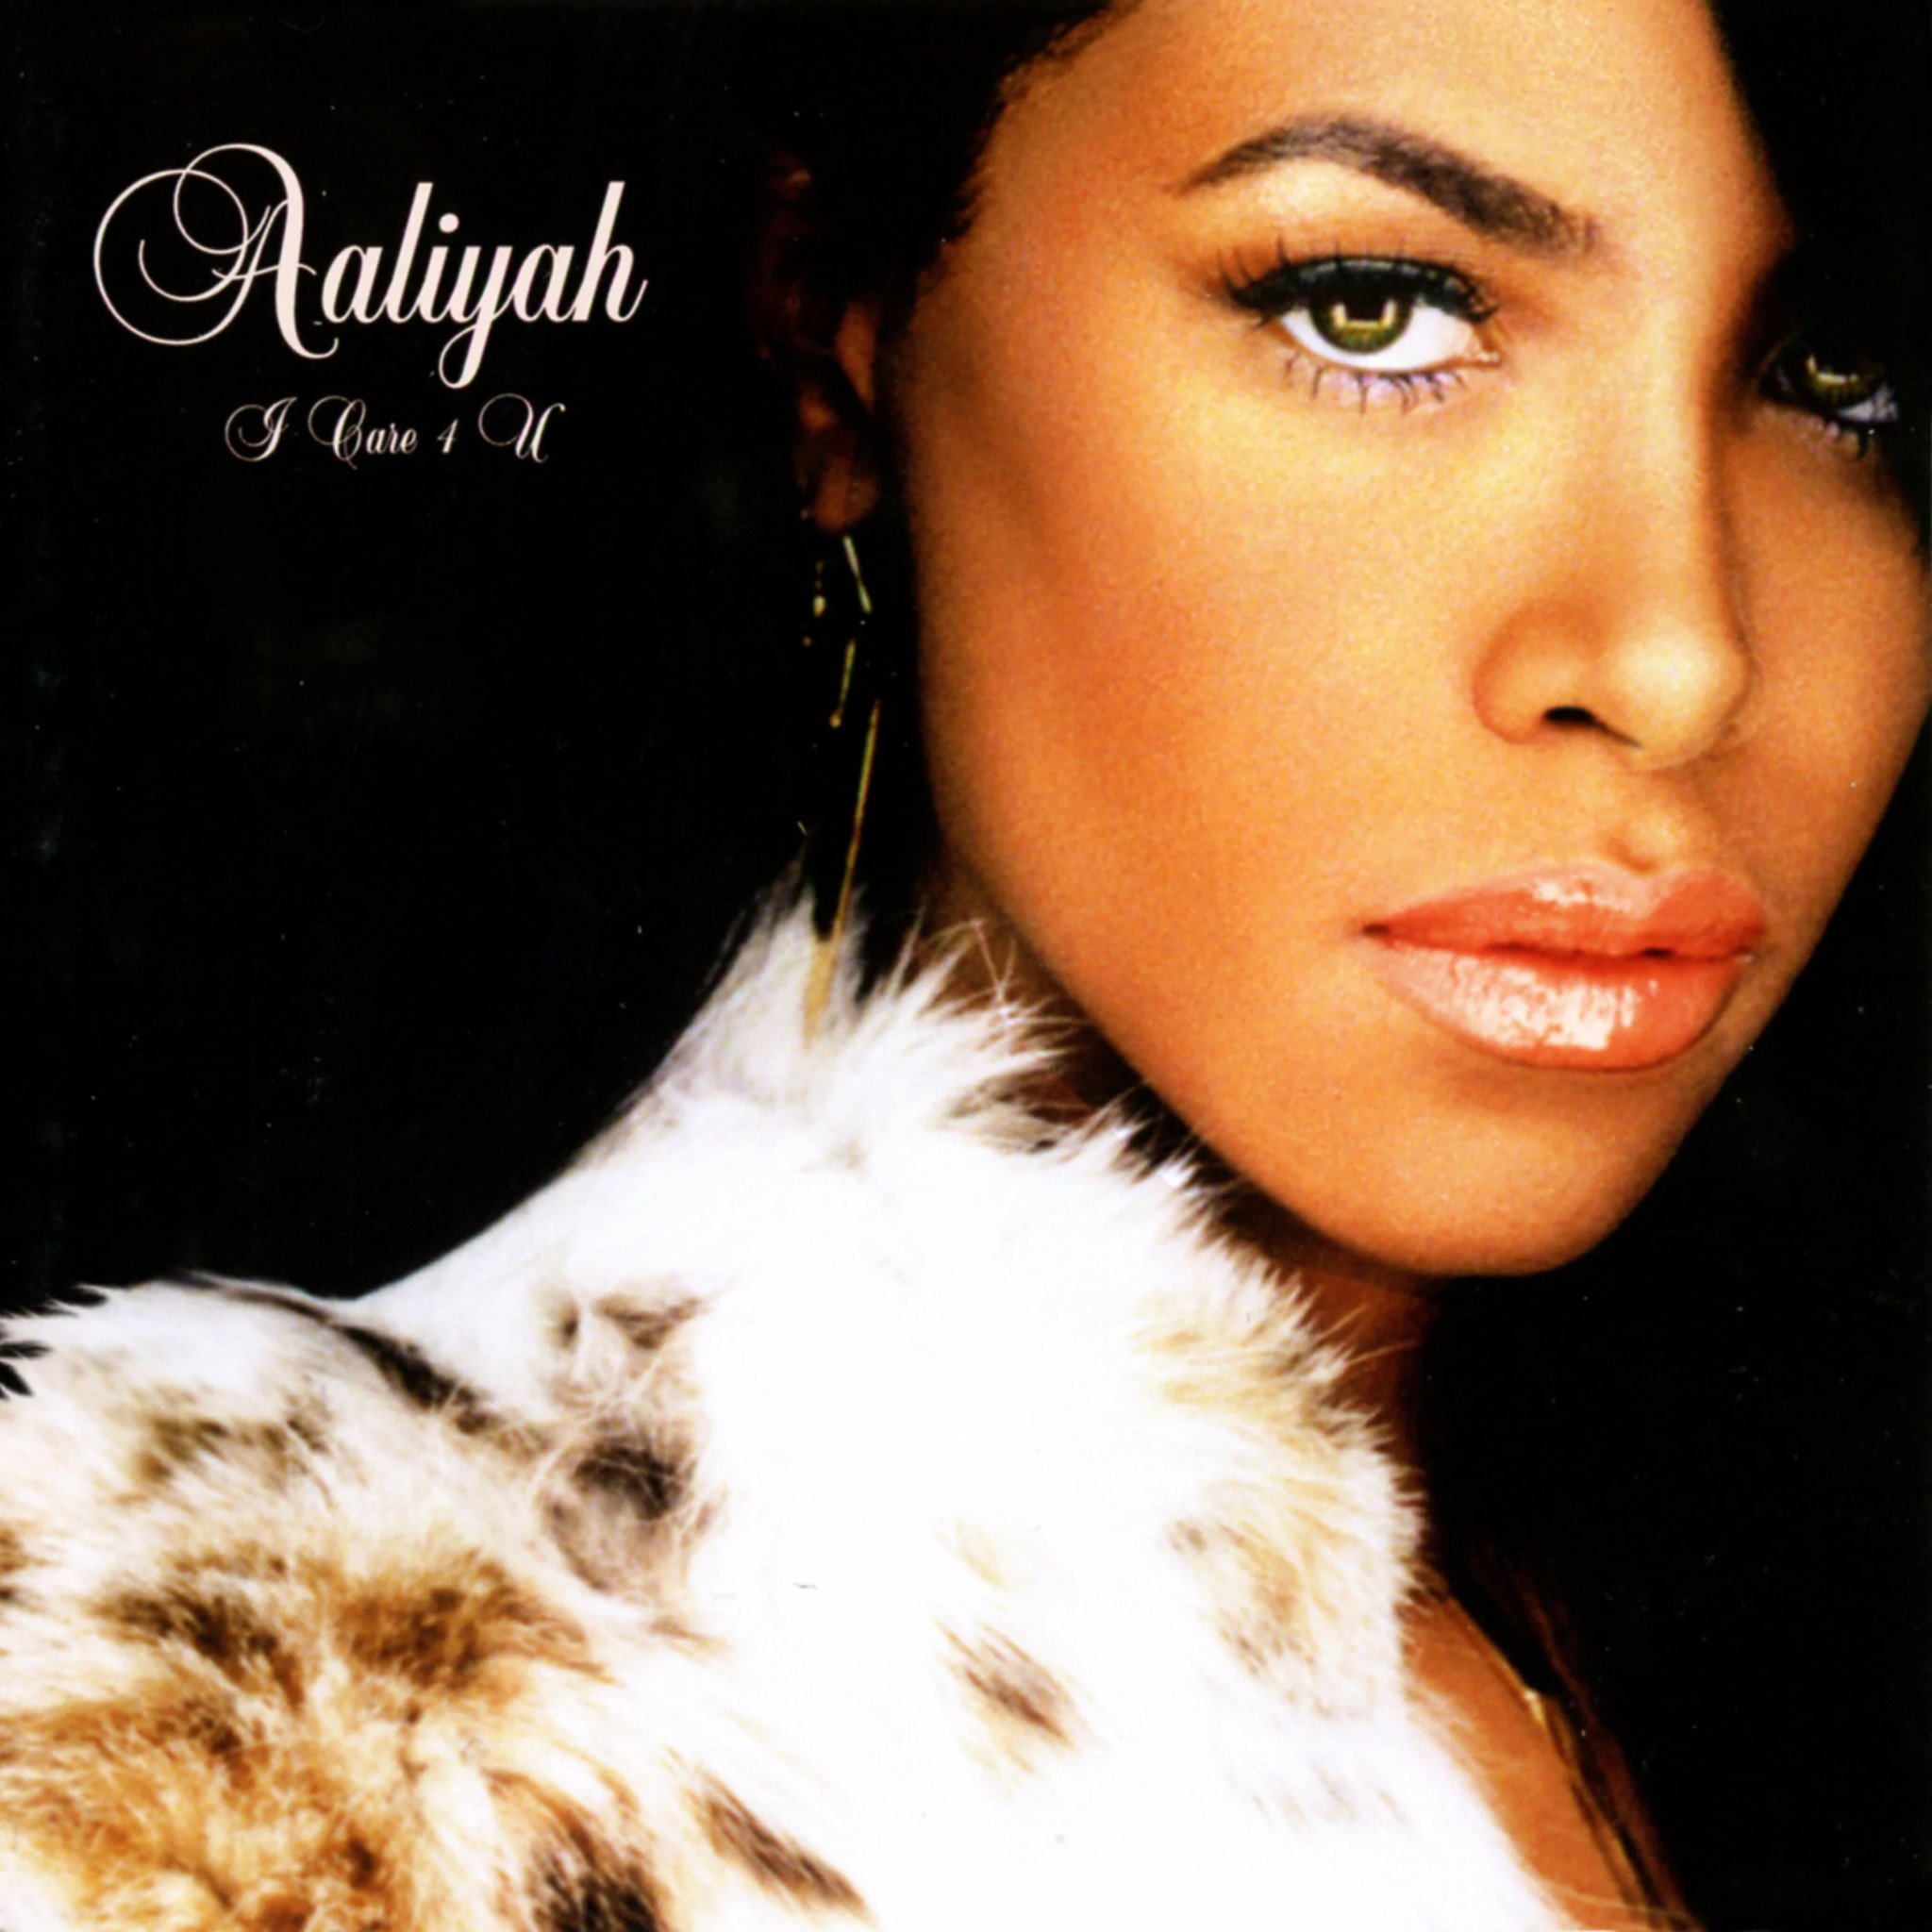 Aaliyah - I Care 4 U (2022 Edition) [Vinyl]